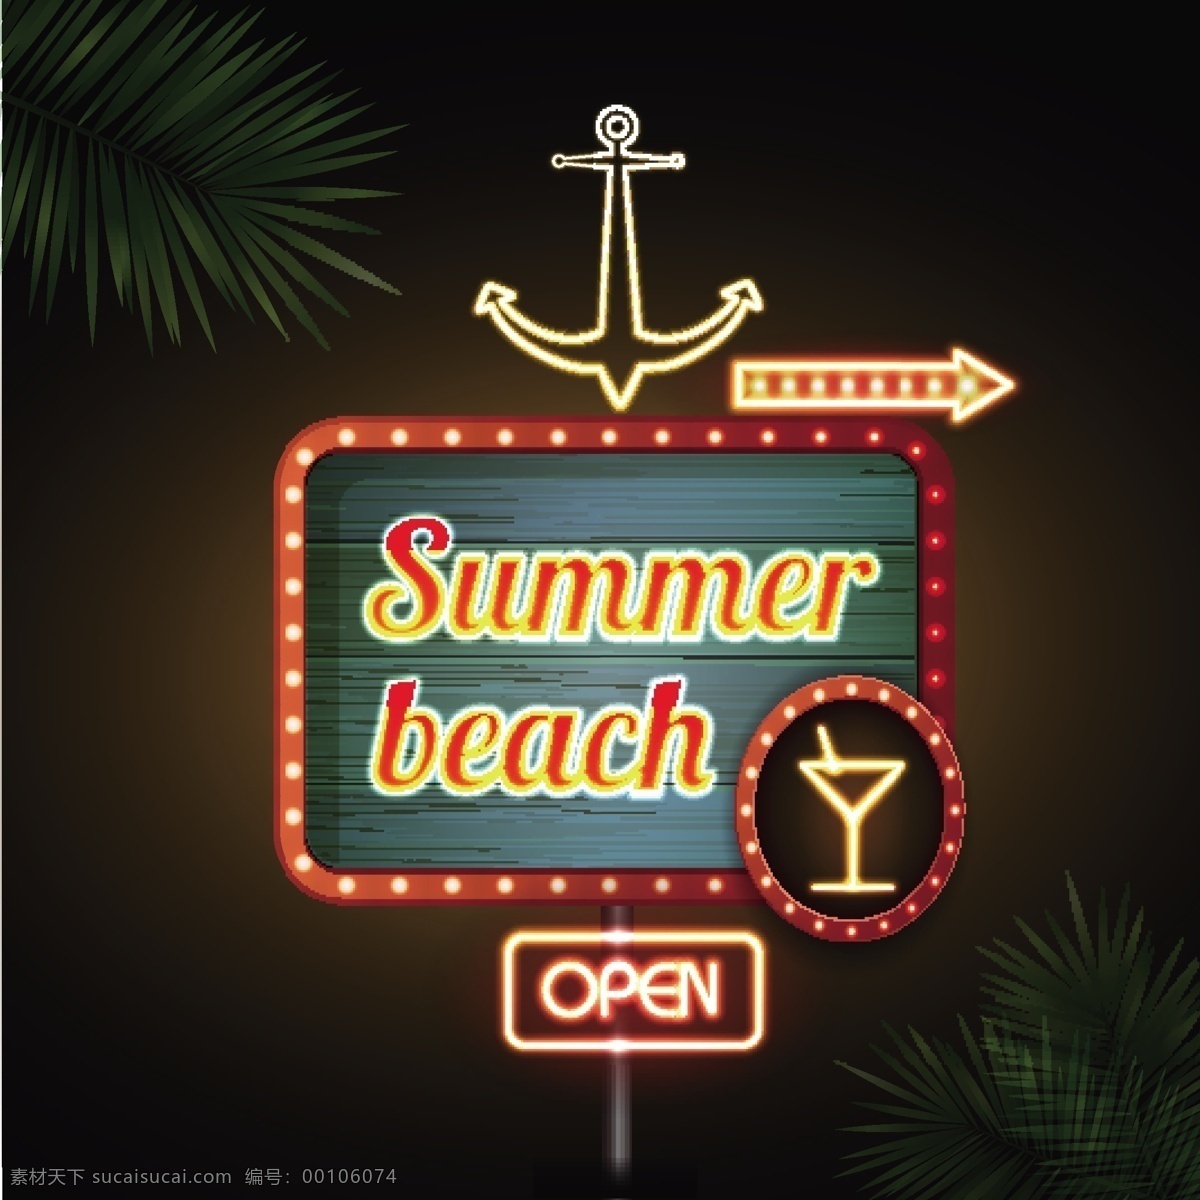 夏季 沙滩 酒吧 霓虹 招牌 矢量图 霓虹灯 创意 黑色